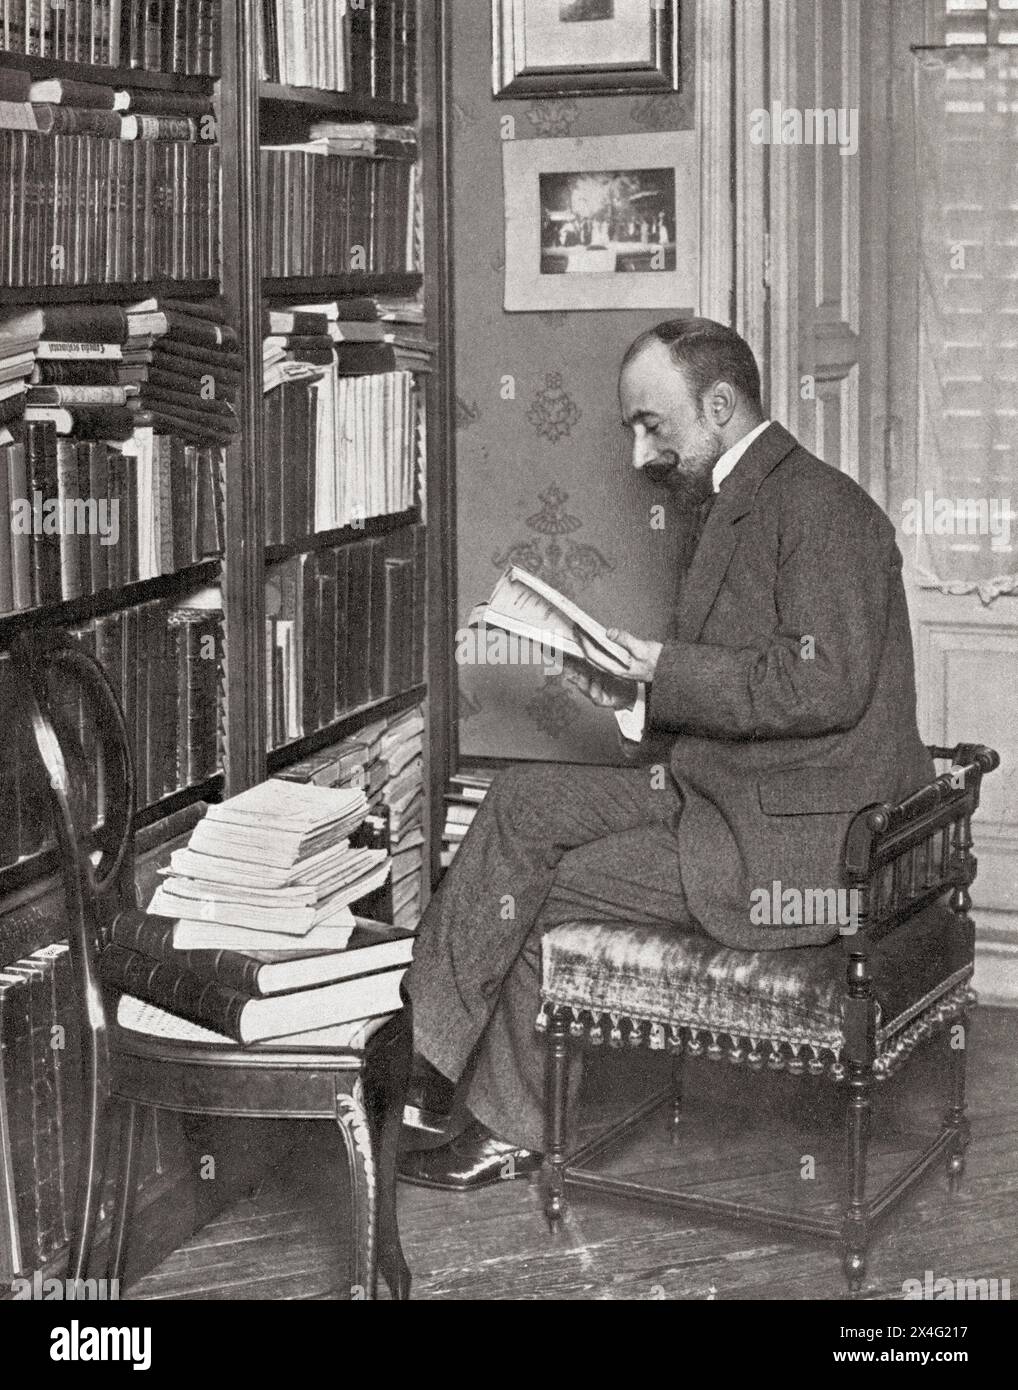 Jacinto Benavente y Martínez, visto qui nella sua biblioteca. Jacinto Benavente y Martínez, 1866 – 1954. Drammaturgo spagnolo, vincitore del Premio Nobel per la letteratura nel 1922. Da Mundo grafico, pubblicato nel 1912. Foto Stock